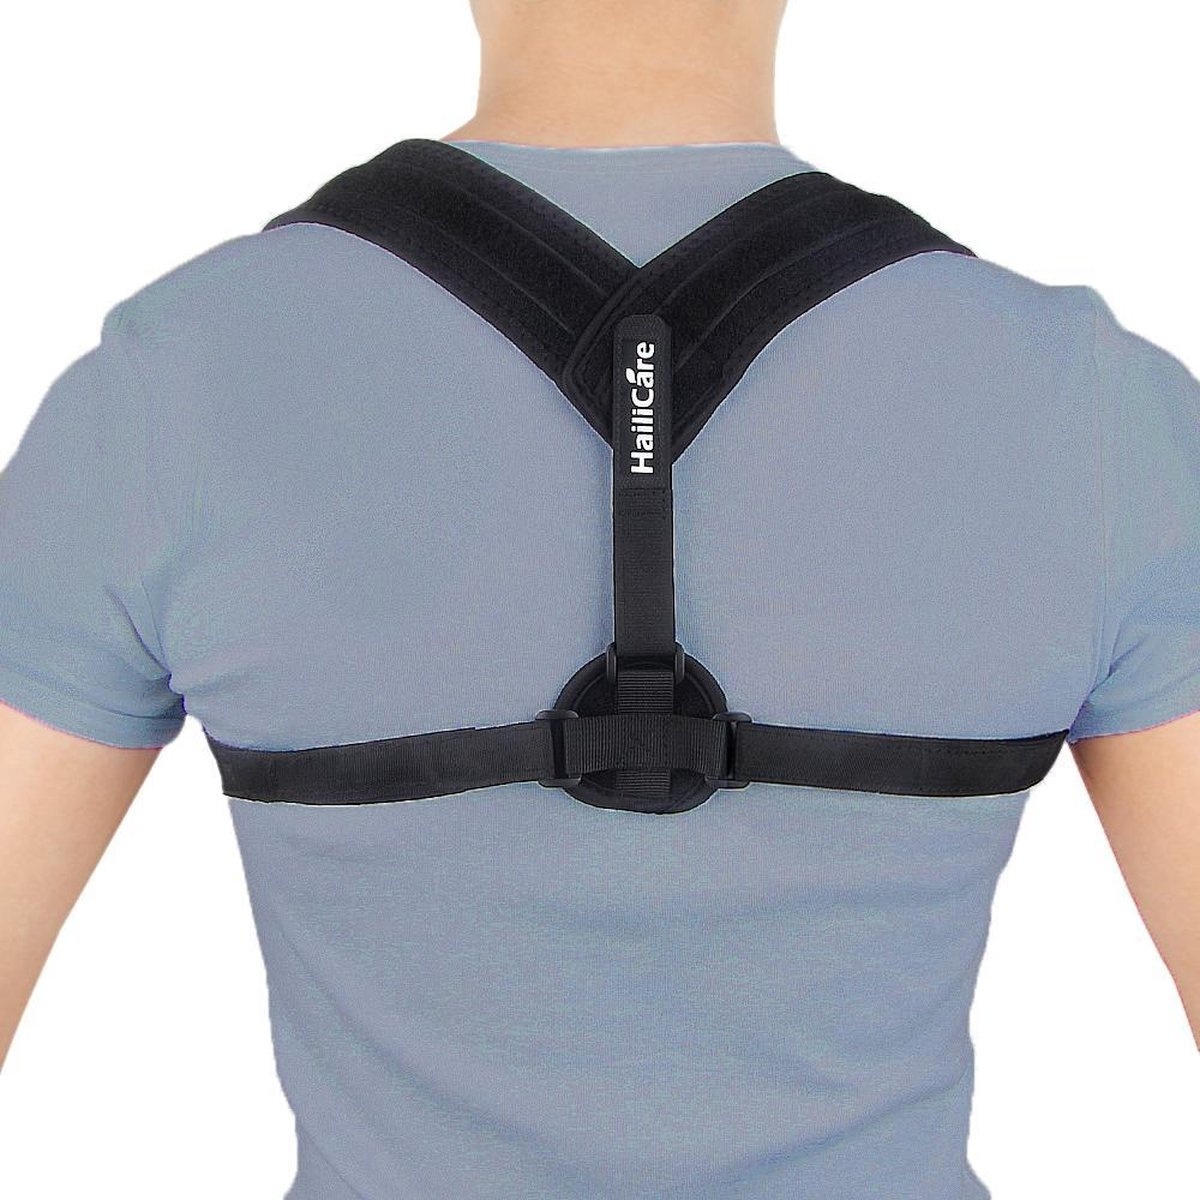 Original 6 günstig Kaufen-Rückenbandage - Einheitsgröße - Die Original Athena Premium Rückenbandage - Haltungskorrekturbandage - Rücken und Schulter. Rückenbandage - Einheitsgröße - Die Original Athena Premium Rückenbandage - Haltungsko